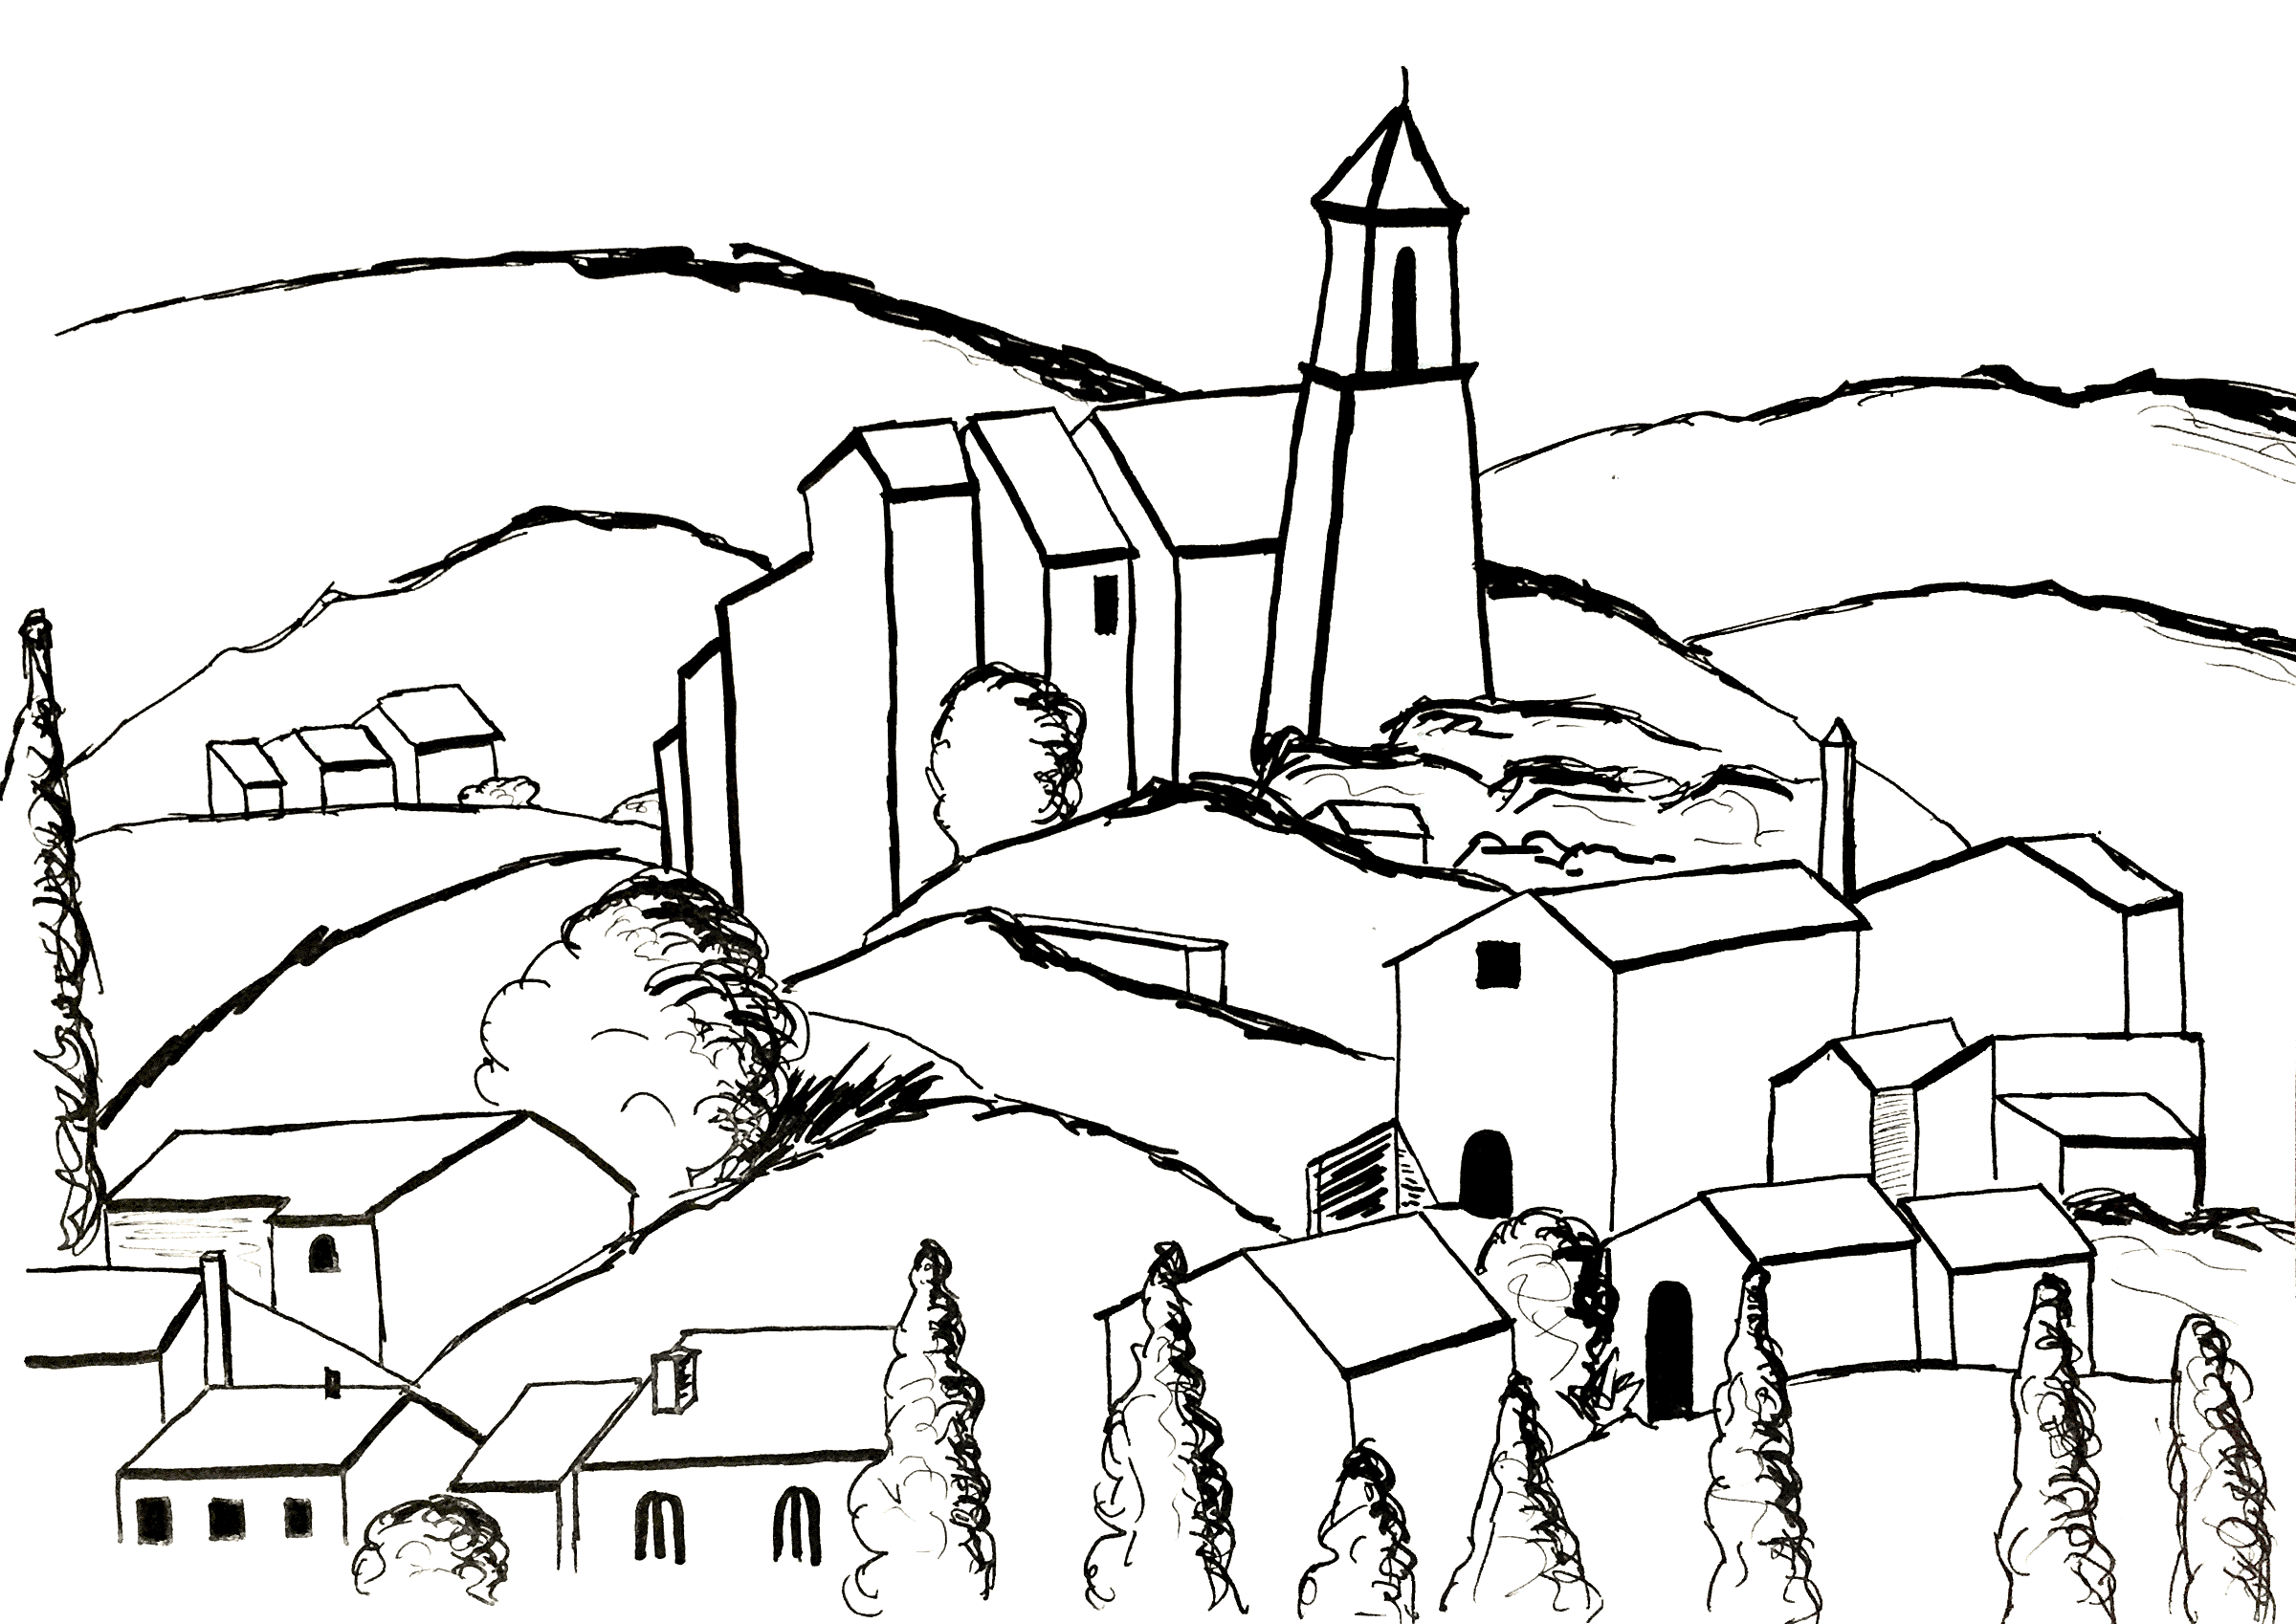 Página para colorear inspirada en un cuadro de Paul Cézanne: Gardanne (versión 2). Gardanne, pueblo situado en Francia, en la región de Provenza-Alpes-Costa Azul, es el único pueblo pintado por Cézanne.